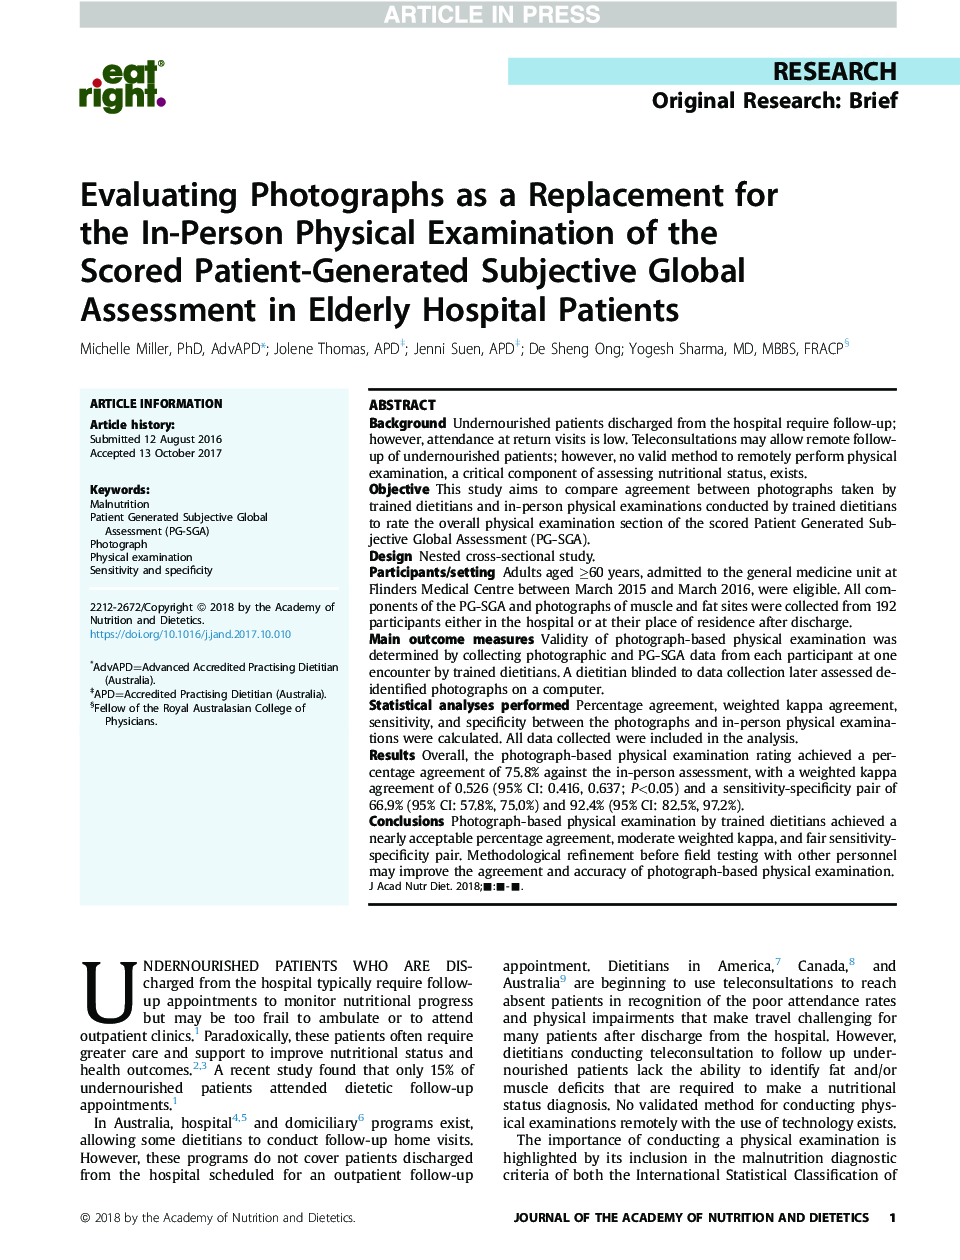 ارزیابی عکس ها به عنوان جایگزینی برای بررسی فیزیکی فردی از ارزیابی جهانی ذهنی تهیه شده توسط بیمار در بیماران سالمند 